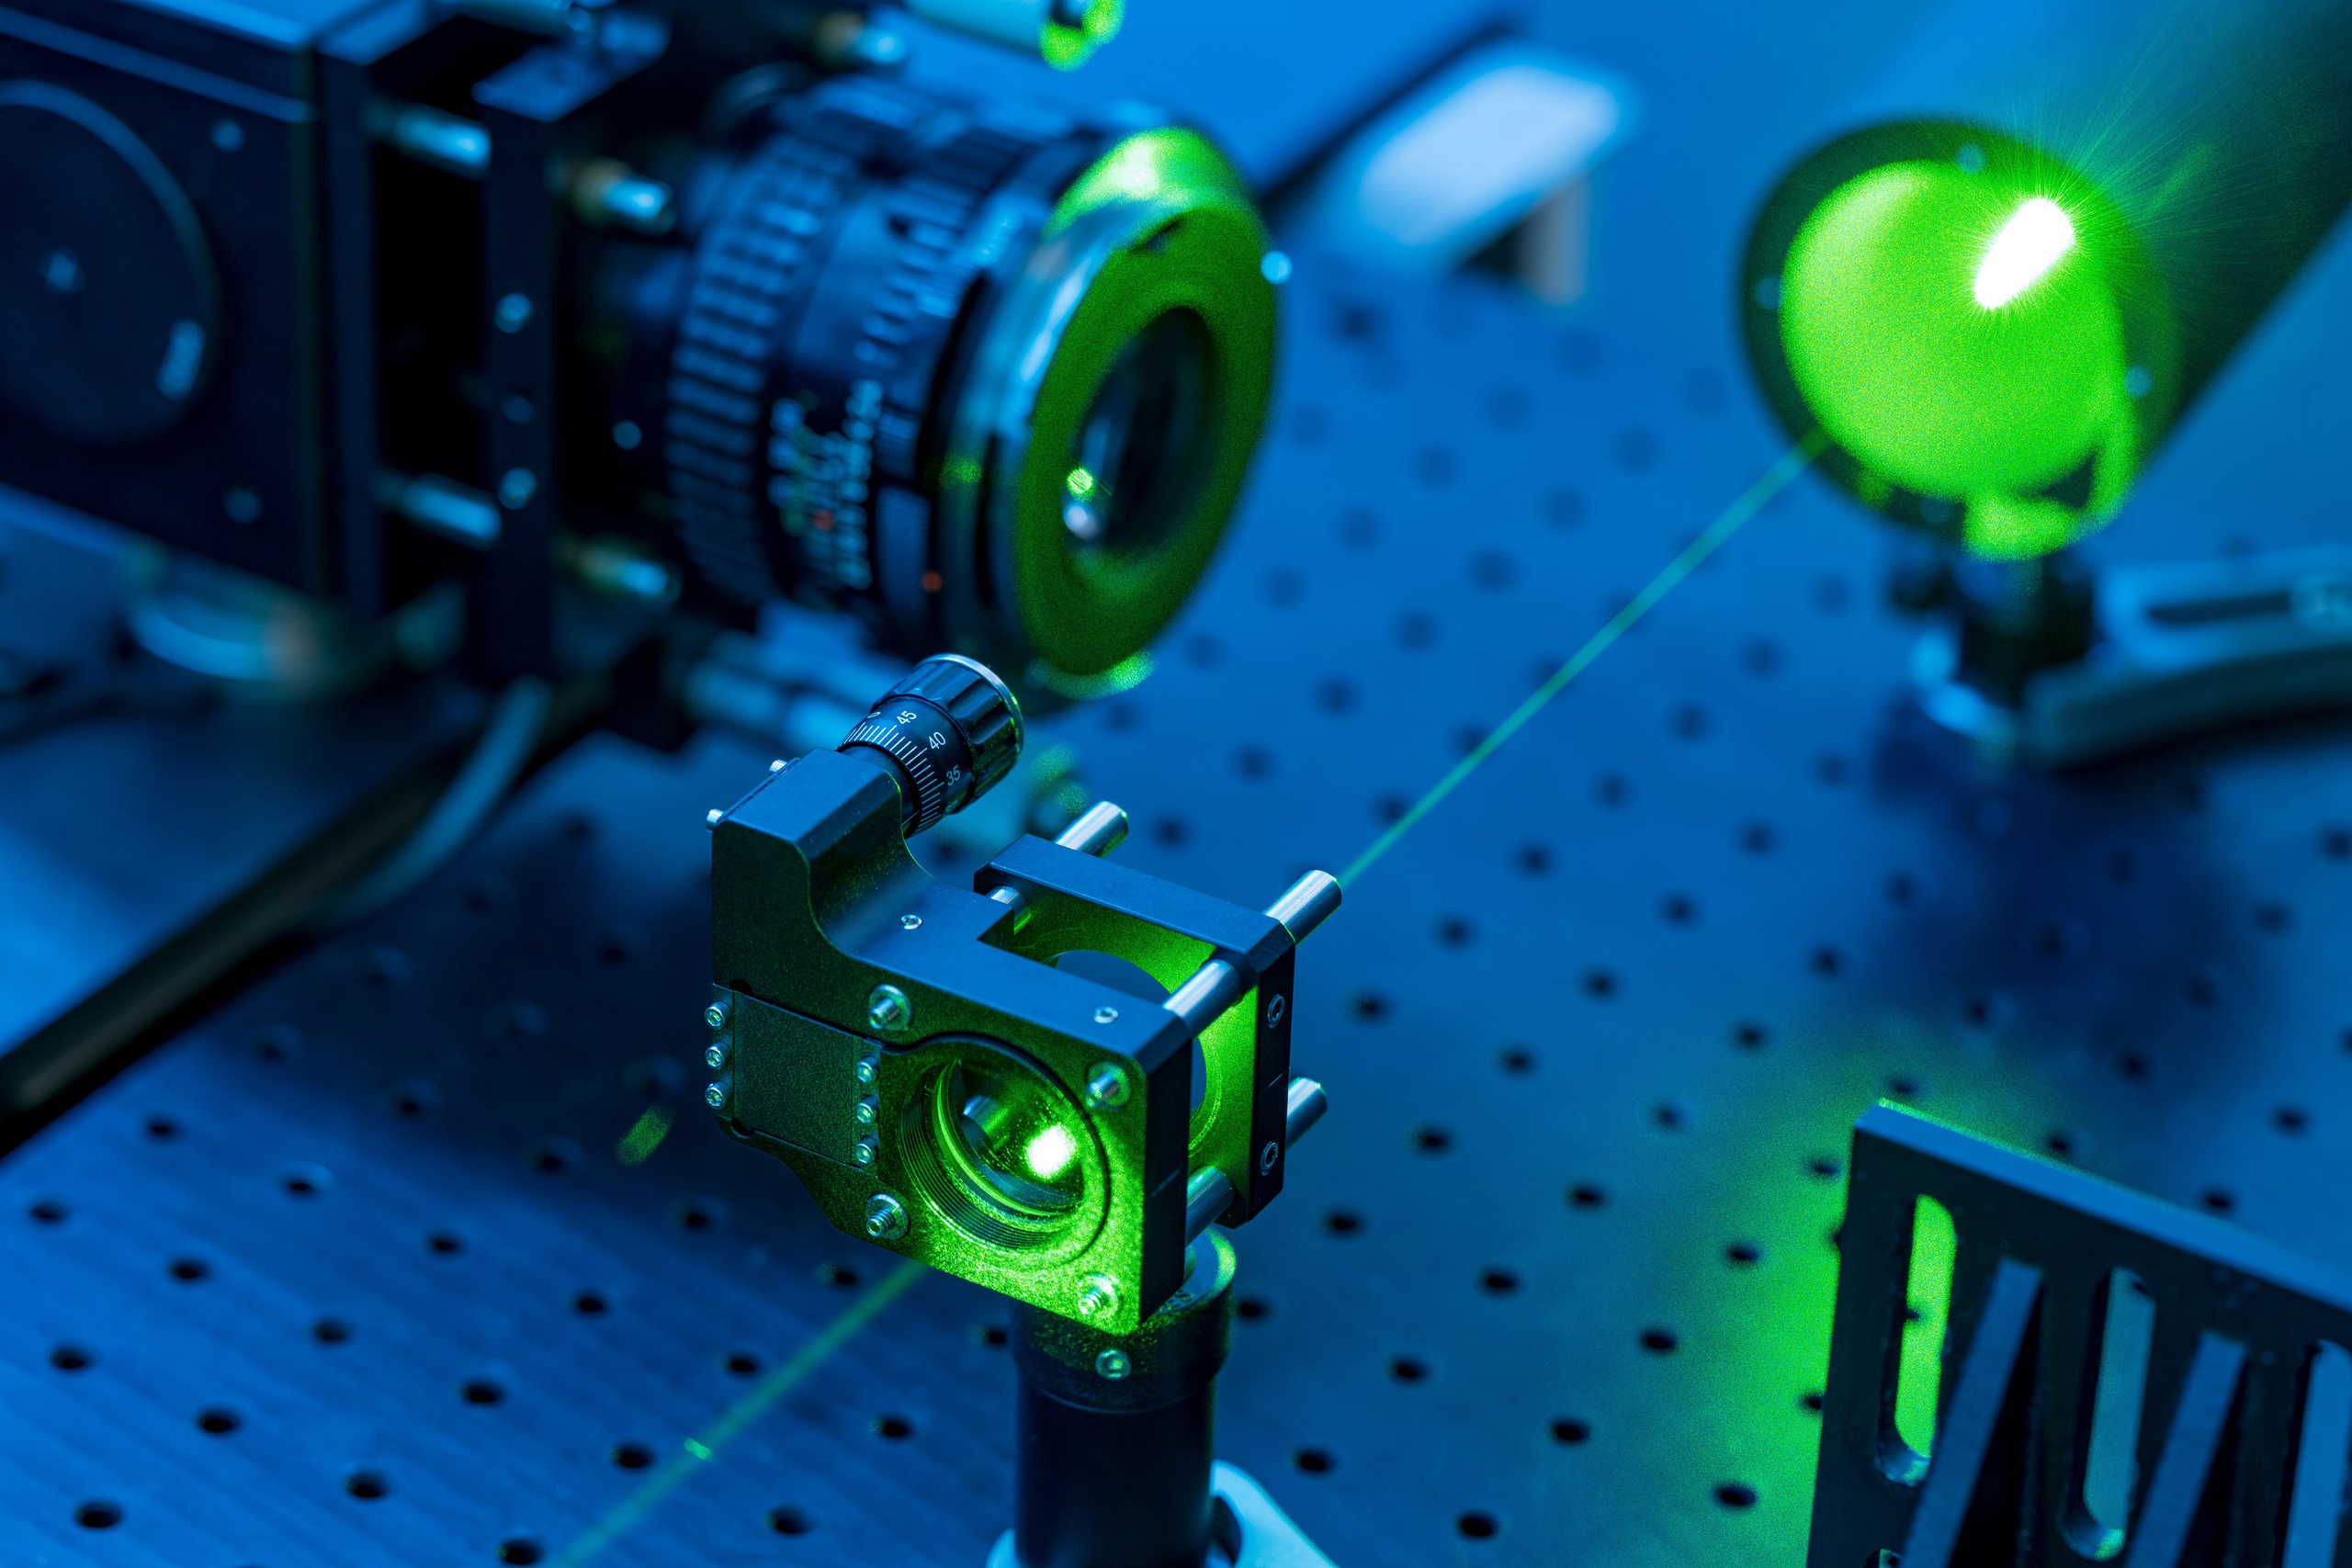 Laborgeräte zur Lasermesstechnik in grünes und blaues Licht getaucht